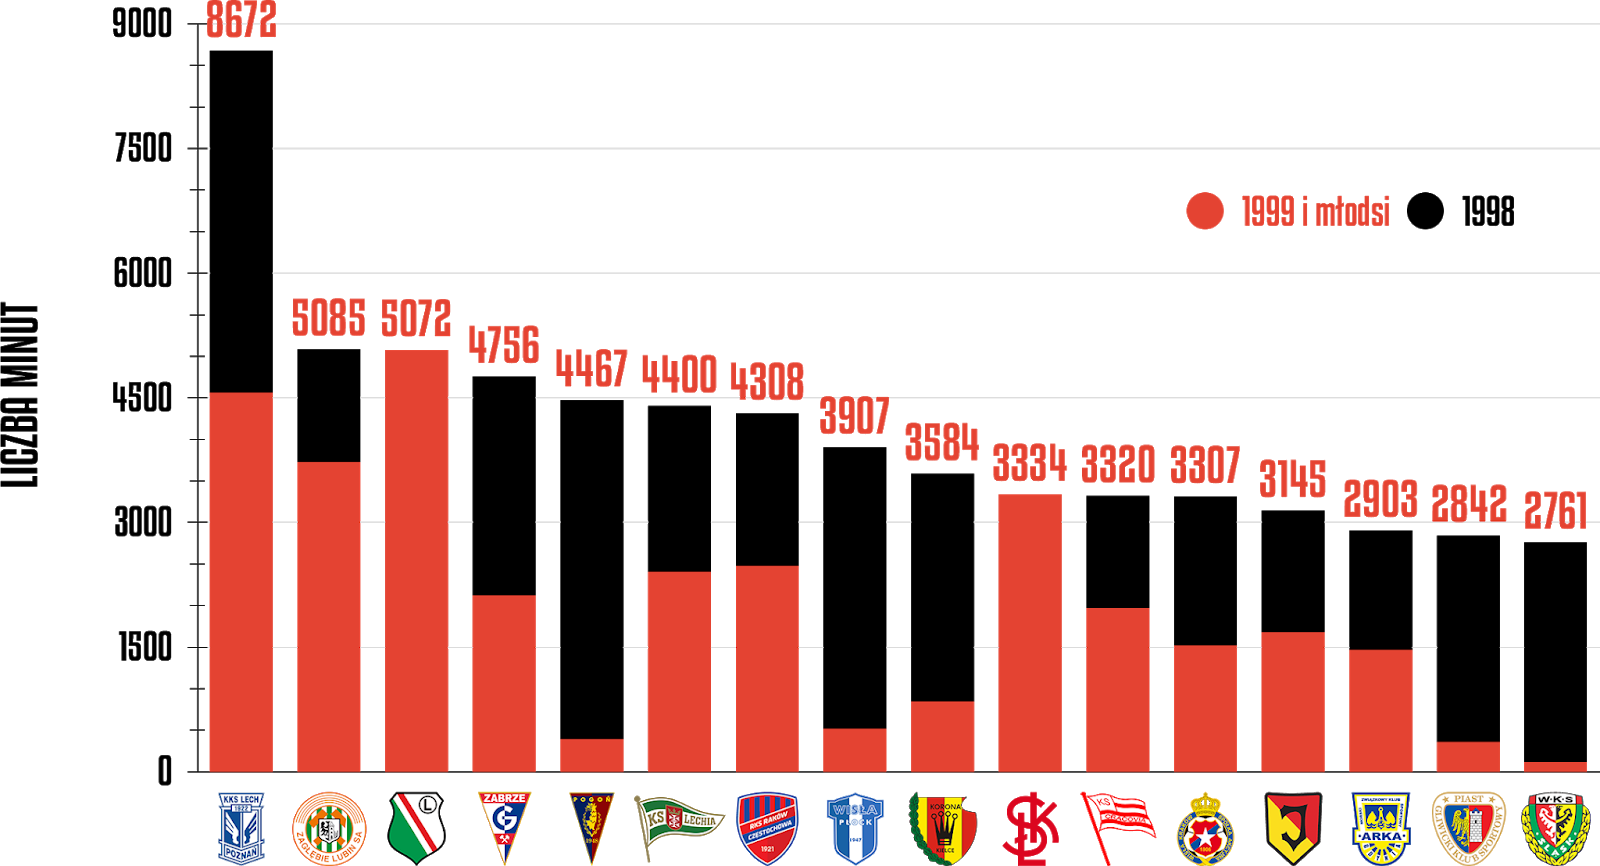 Klasyfikacja klubów pod względem rozegranych minut przez młodzieżowców po 30 kolejkach PKO Ekstraklasy<br><br>Źródło: Opracowanie własne na podstawie ekstrastats.pl<br><br>graf. Bartosz Urban